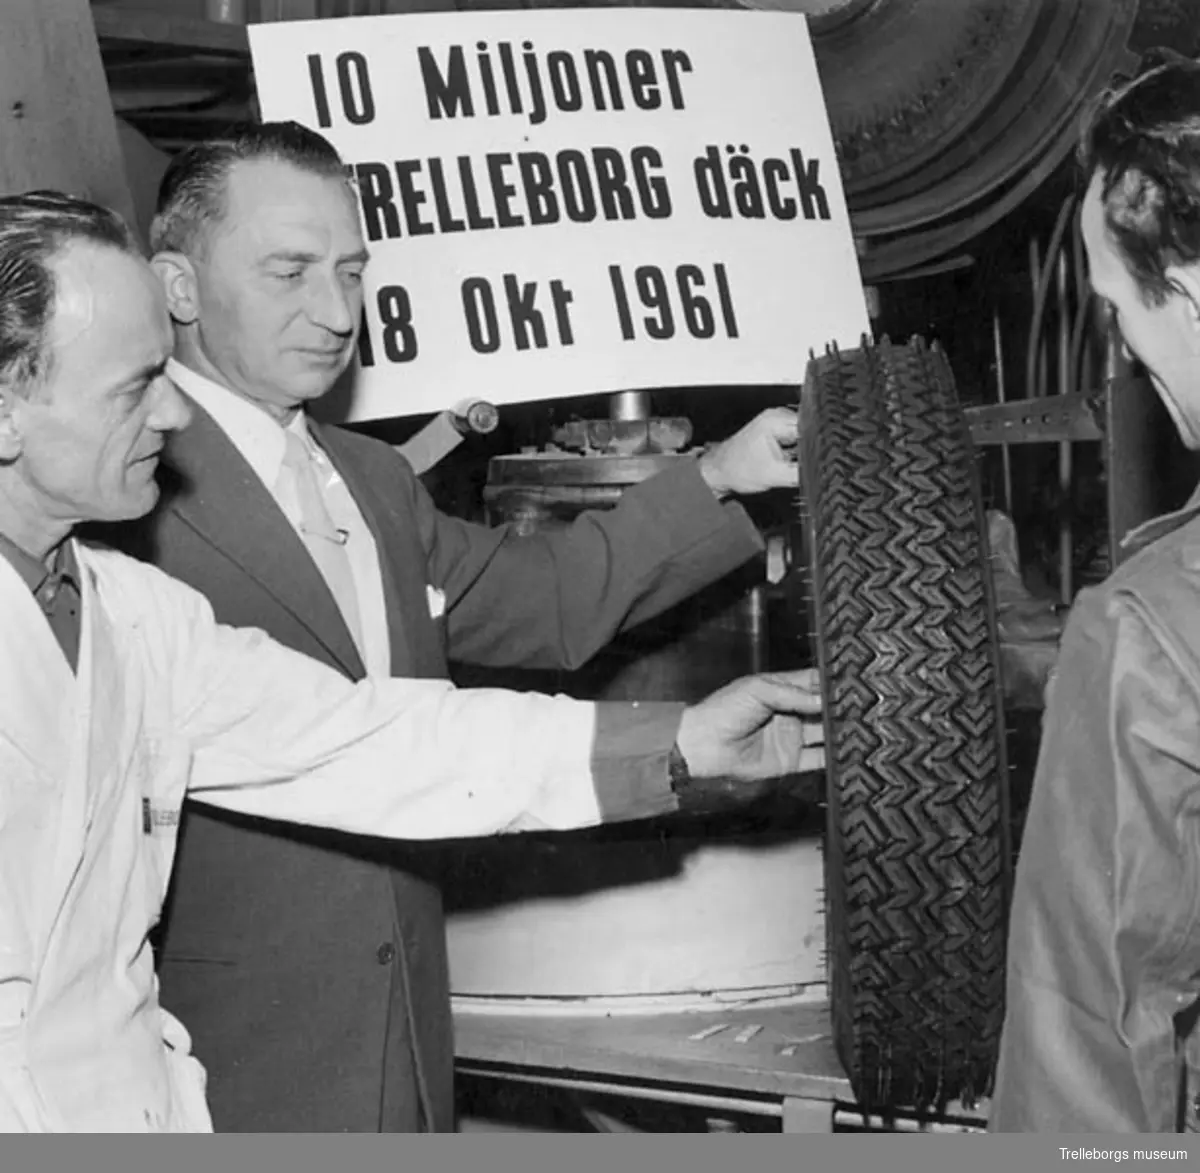 Det 10 miljonte Trelleborgsdäcket tillverkades den 18 oktober 1961. På bilden ses bilringsfabrikens chef, överingenjör Nils Borglin, flankerad till vänster av verkmästare Egon strandberg och till höger av vulkanisör Kjell Jarlborg.